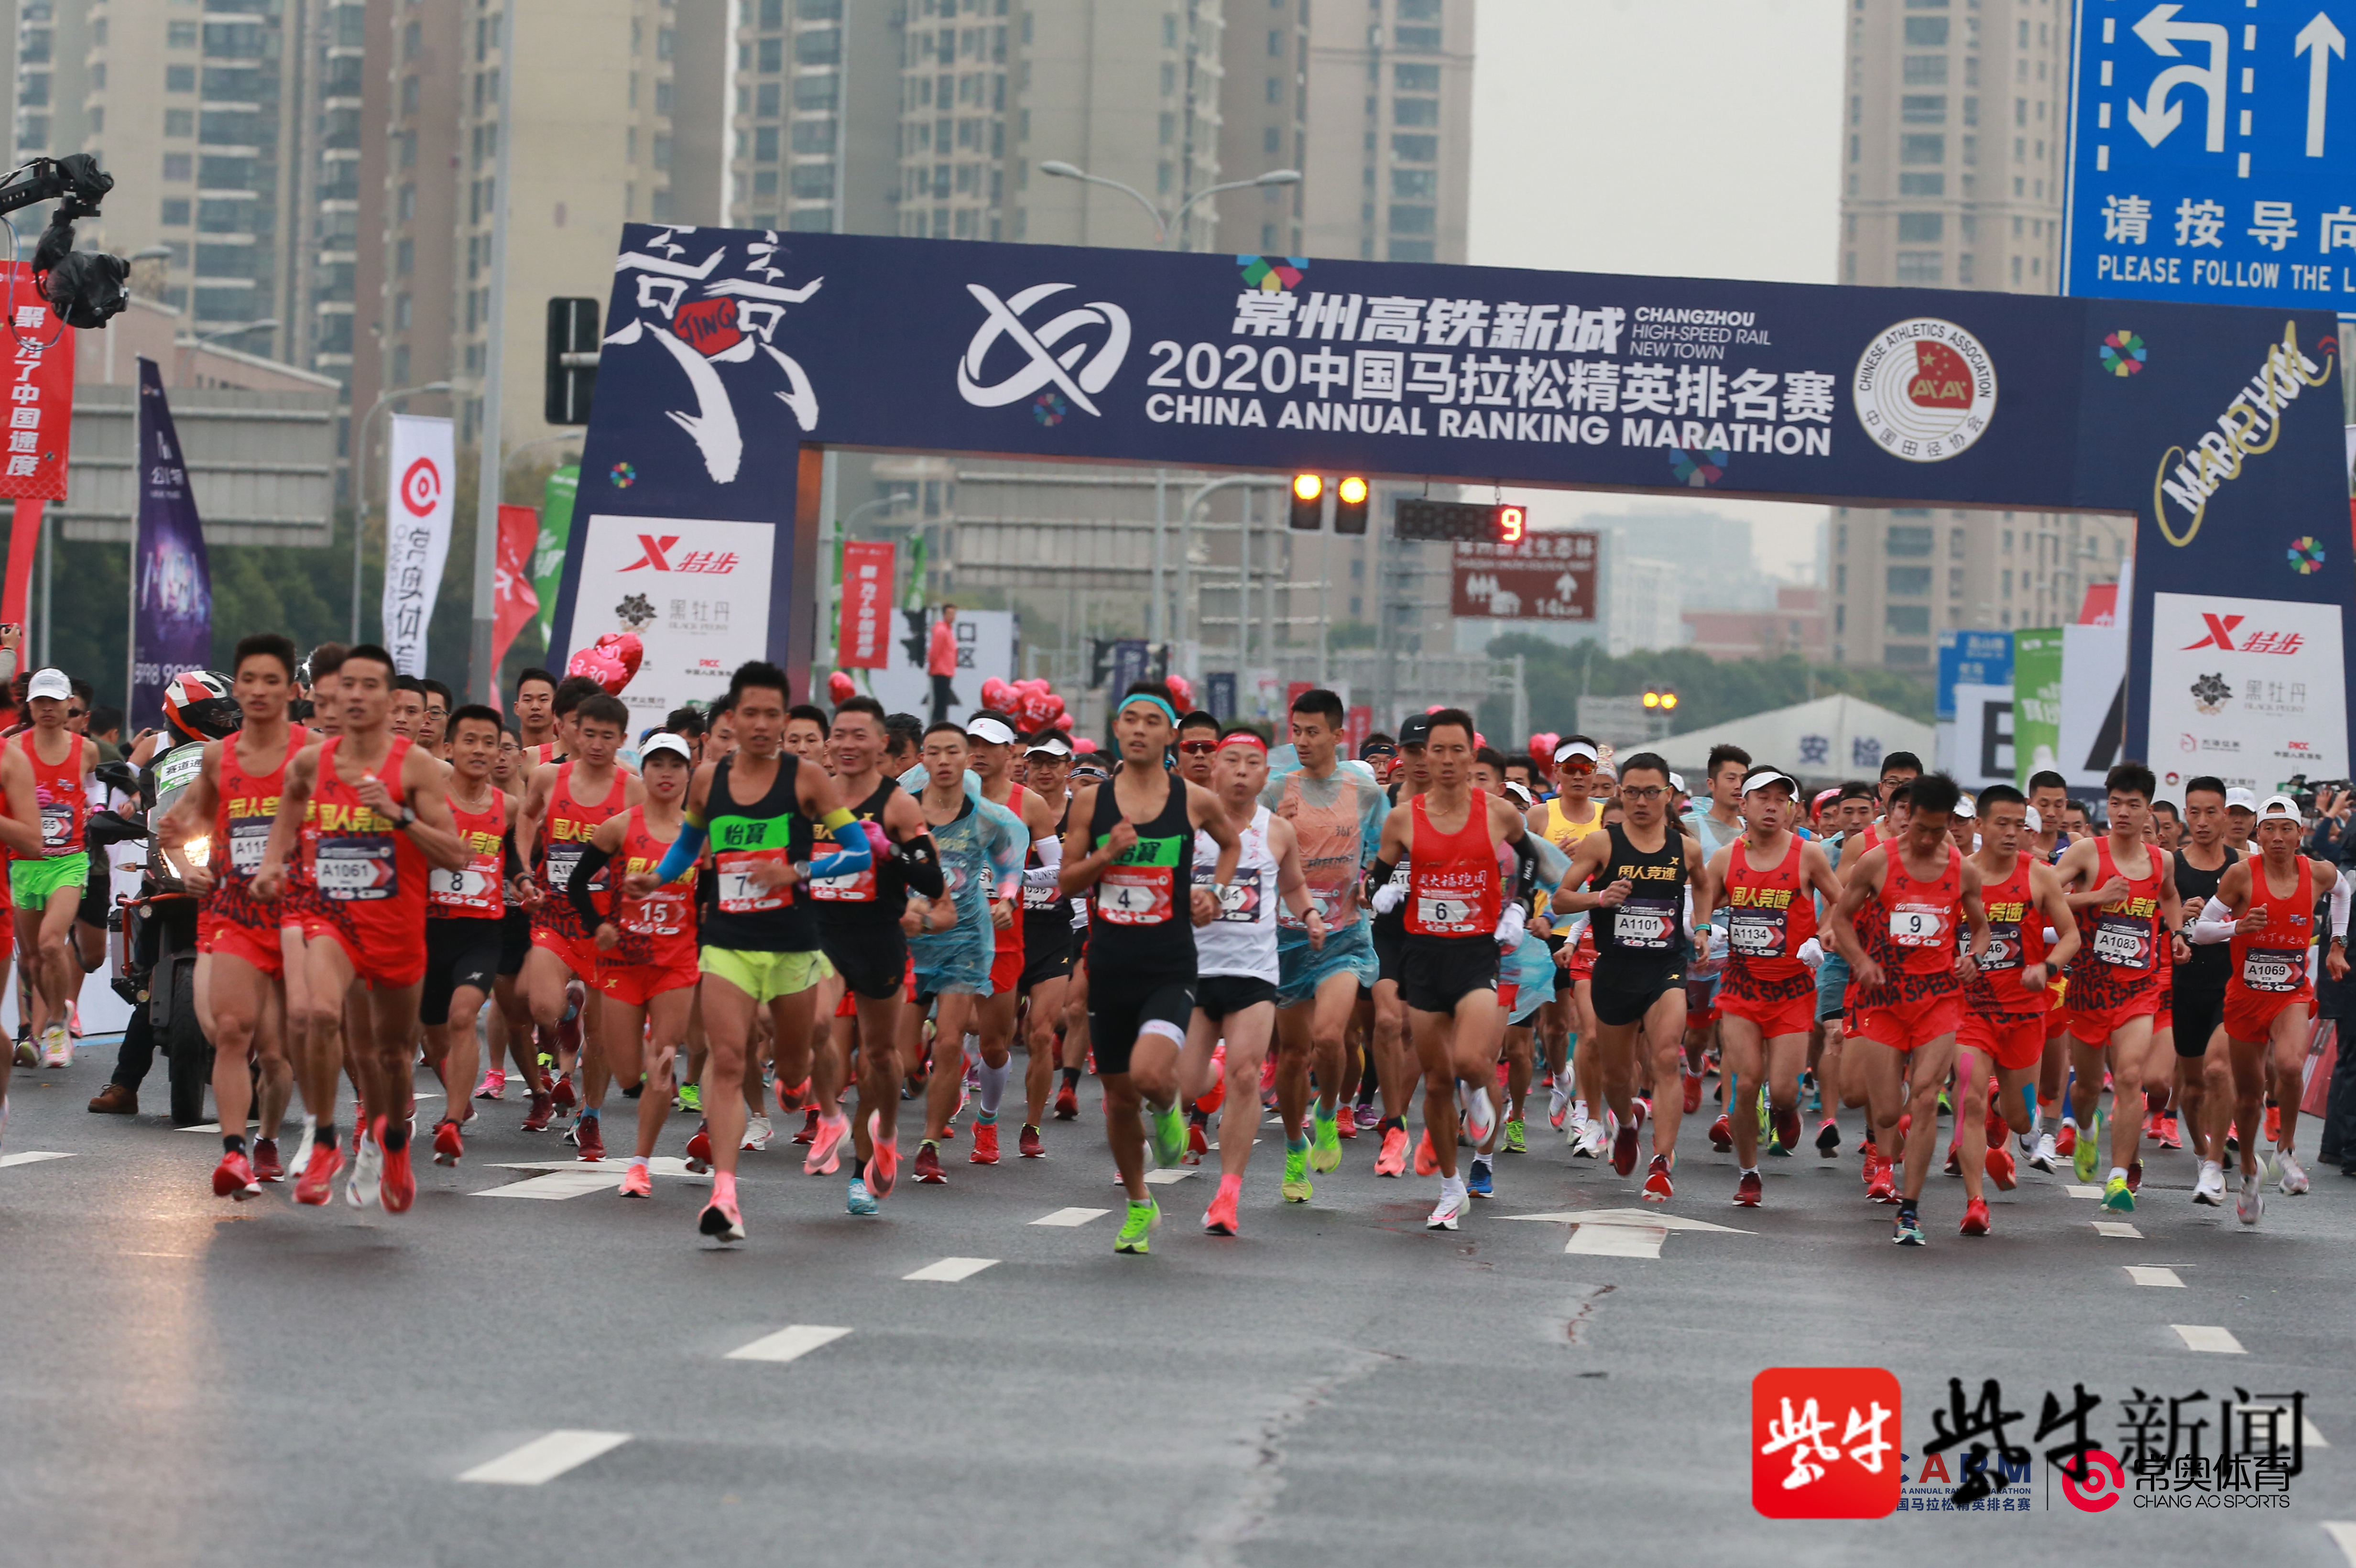 常州高铁新城2020中国马拉松精英排名赛顺利落幕,岑万江,丁常琴夺冠